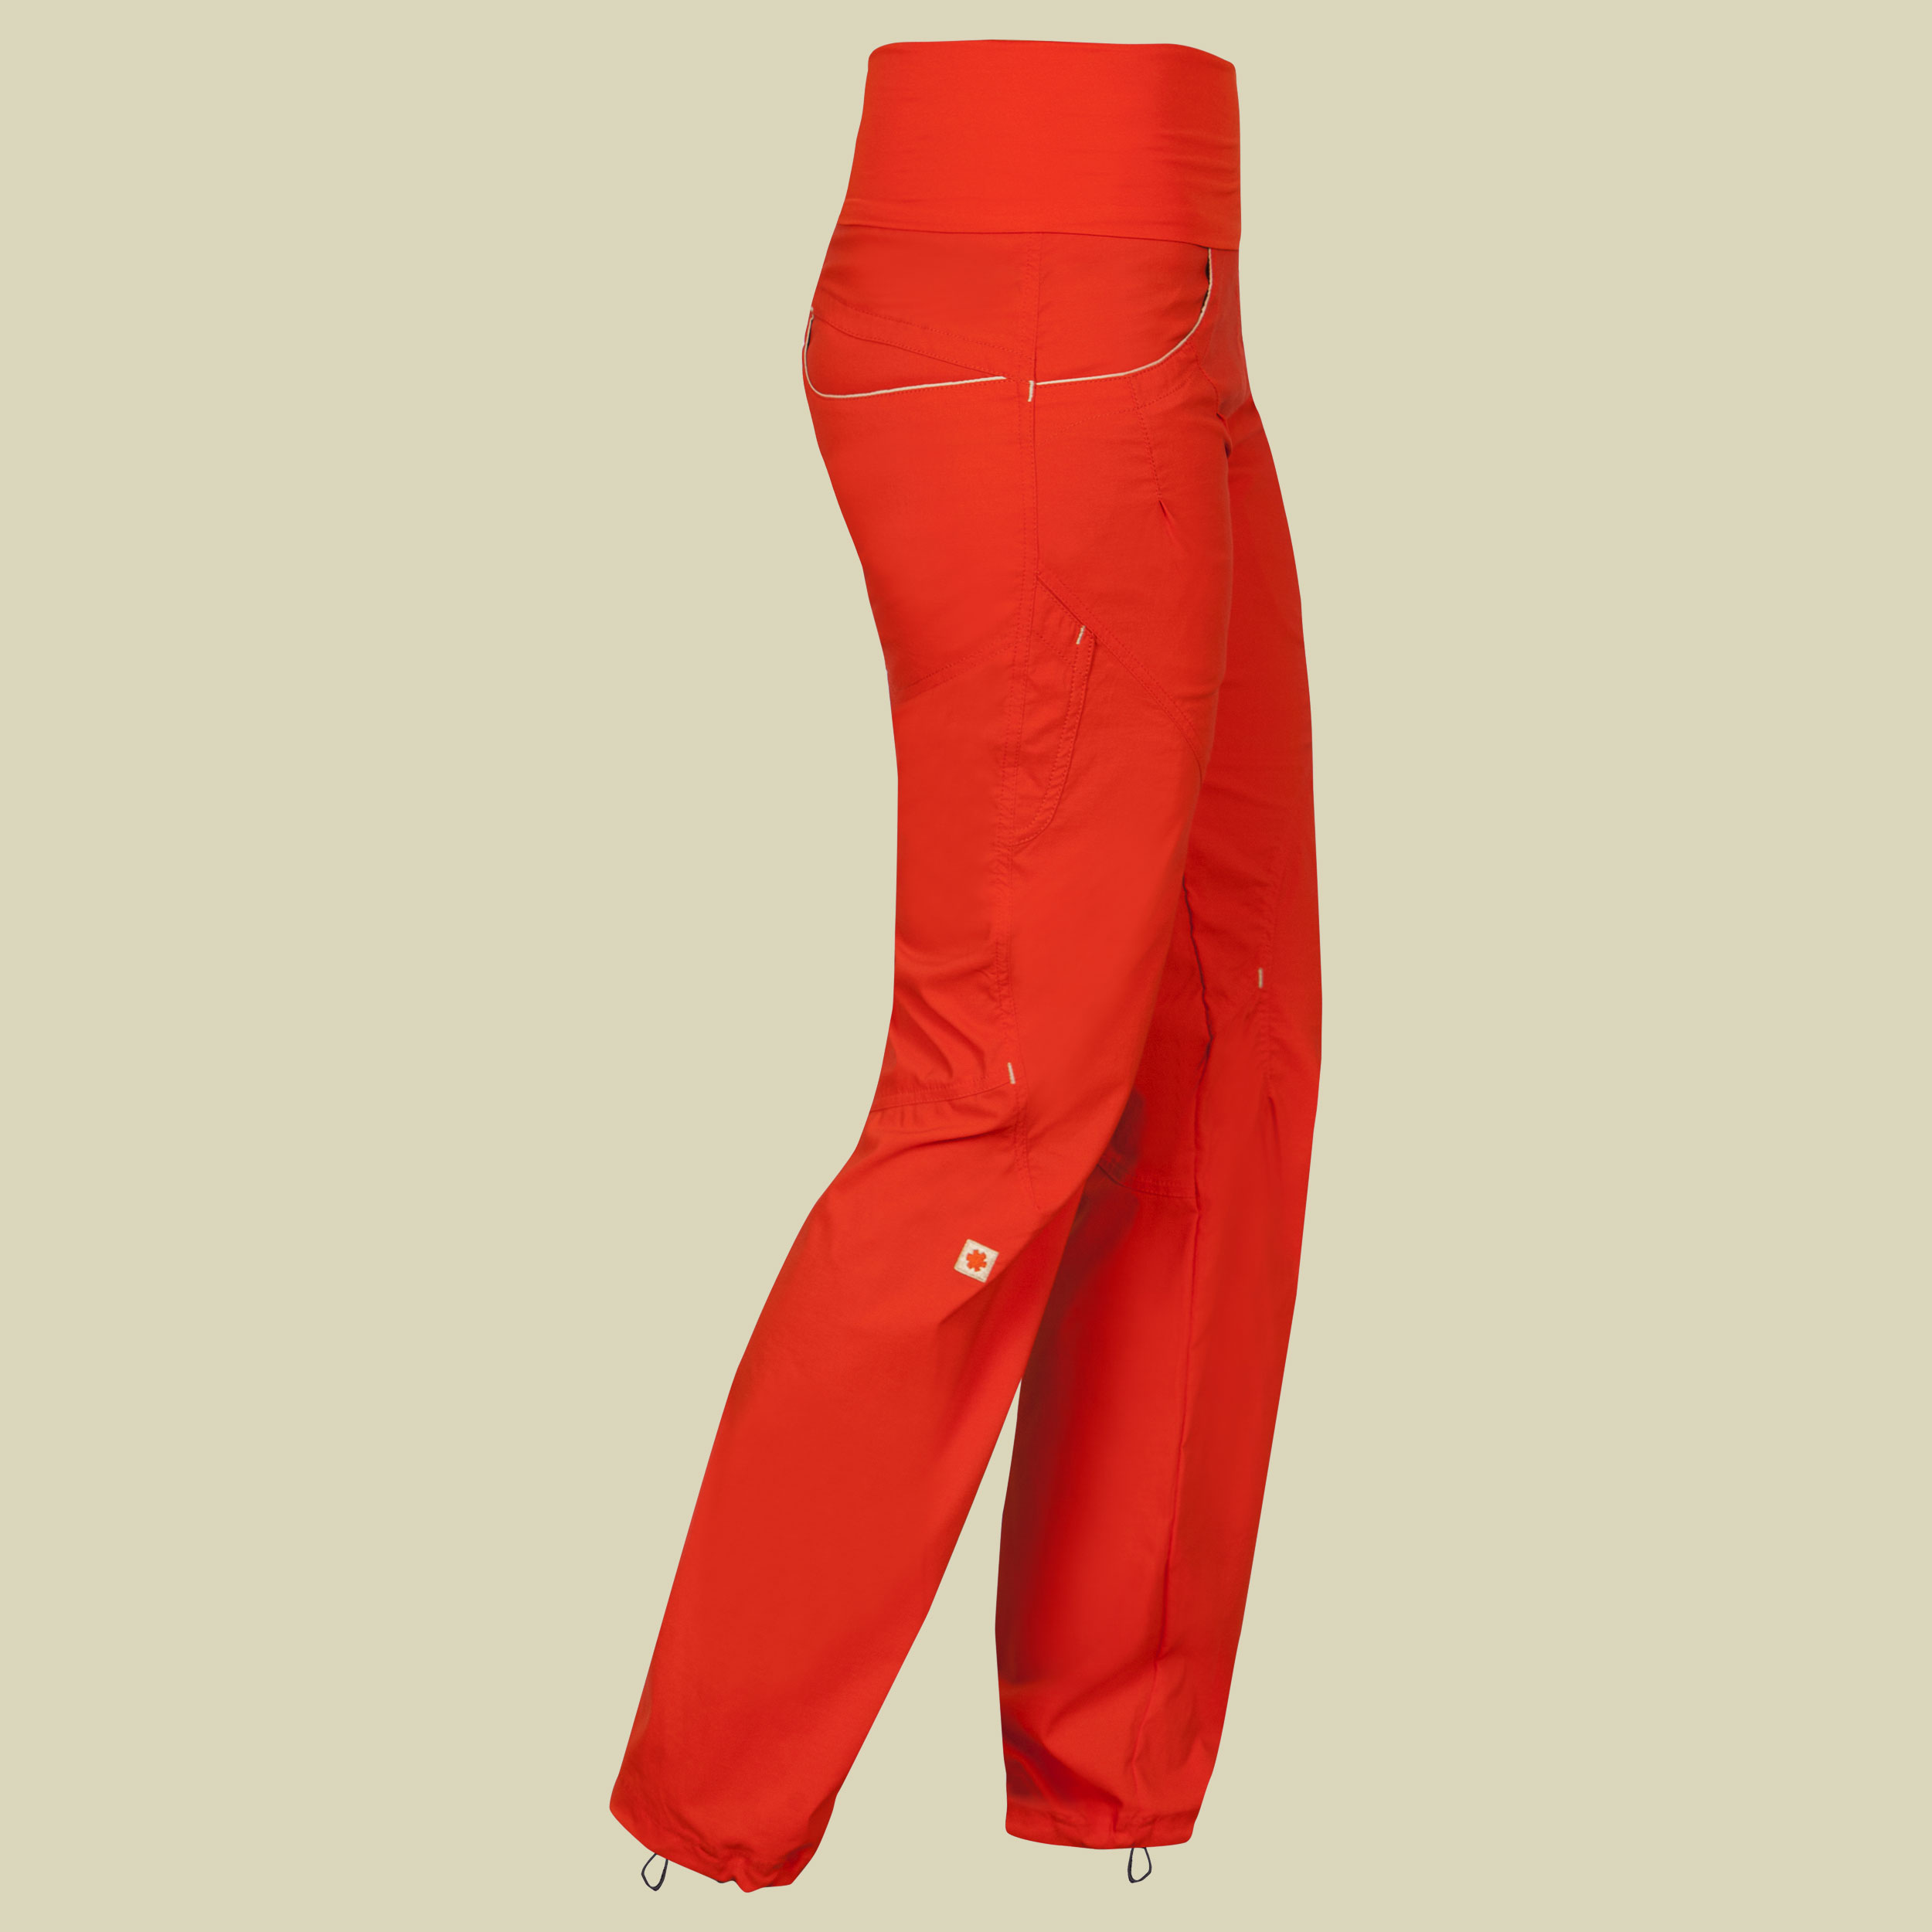 Noya Pants Women Größe S Farbe orange poinciana